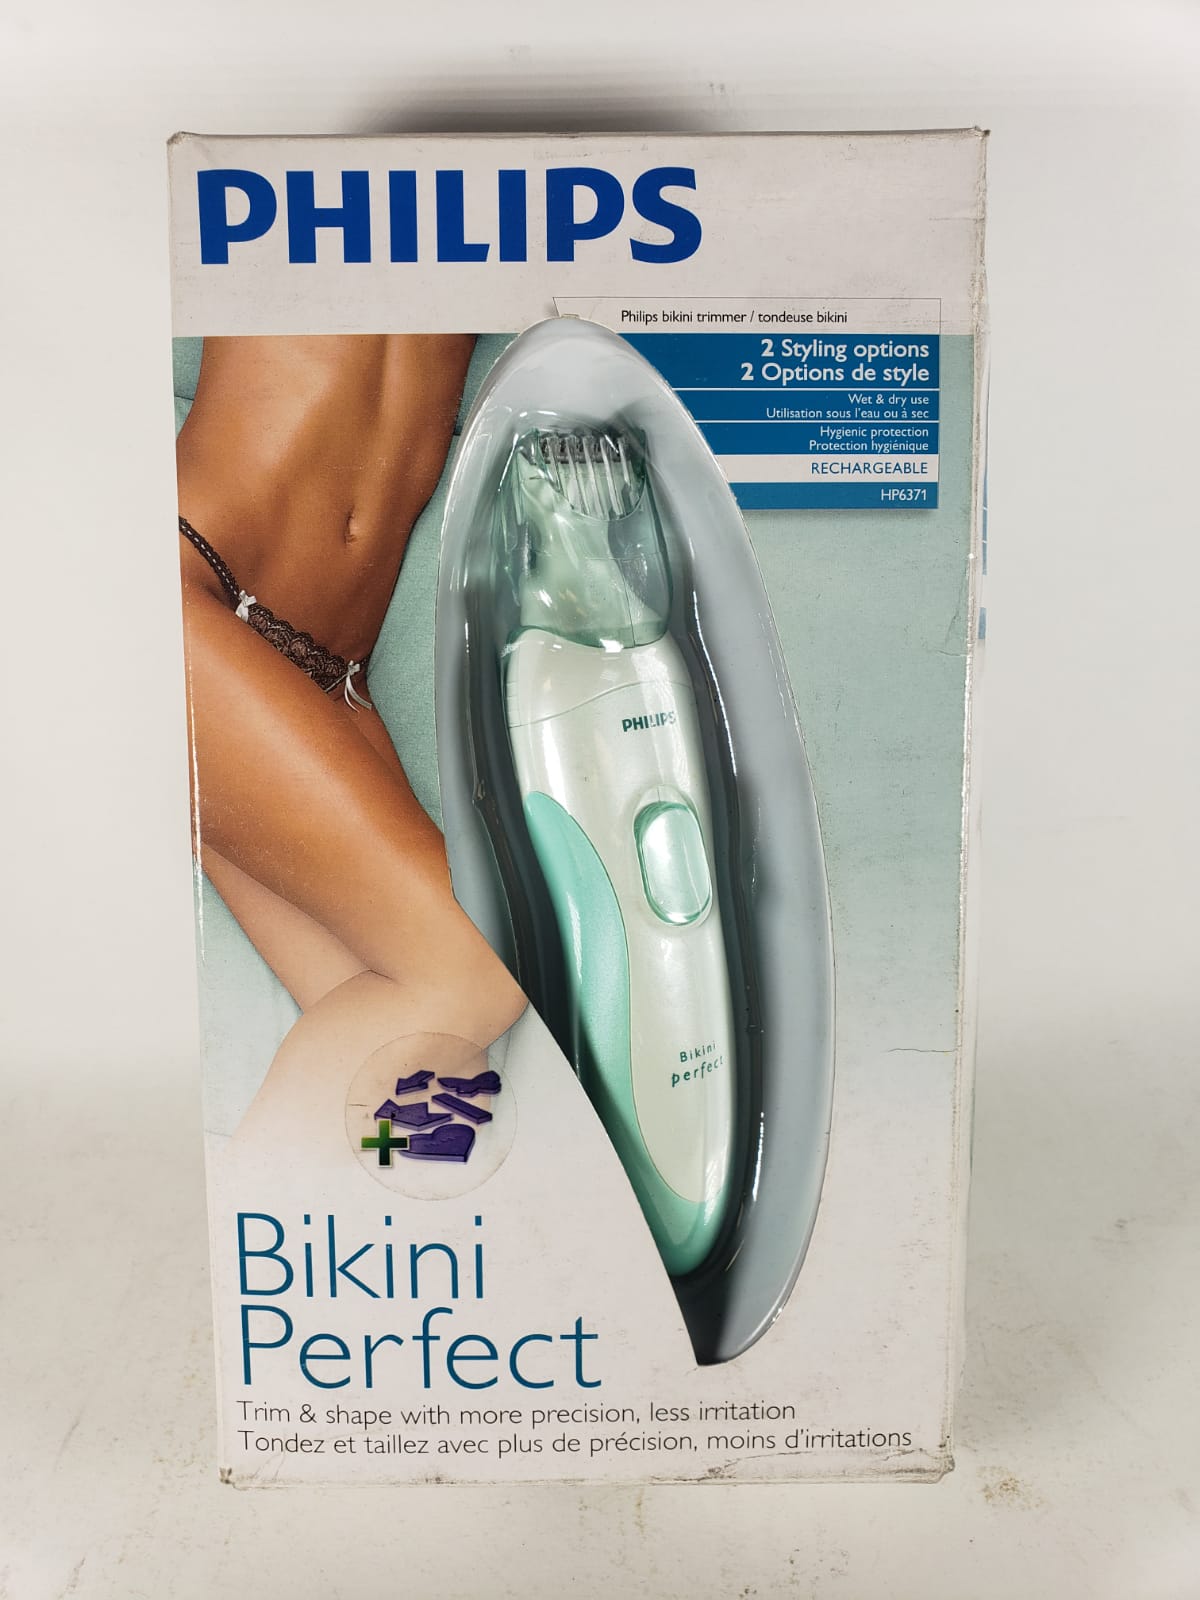 philips bikini perfect advanced bikini trimmer